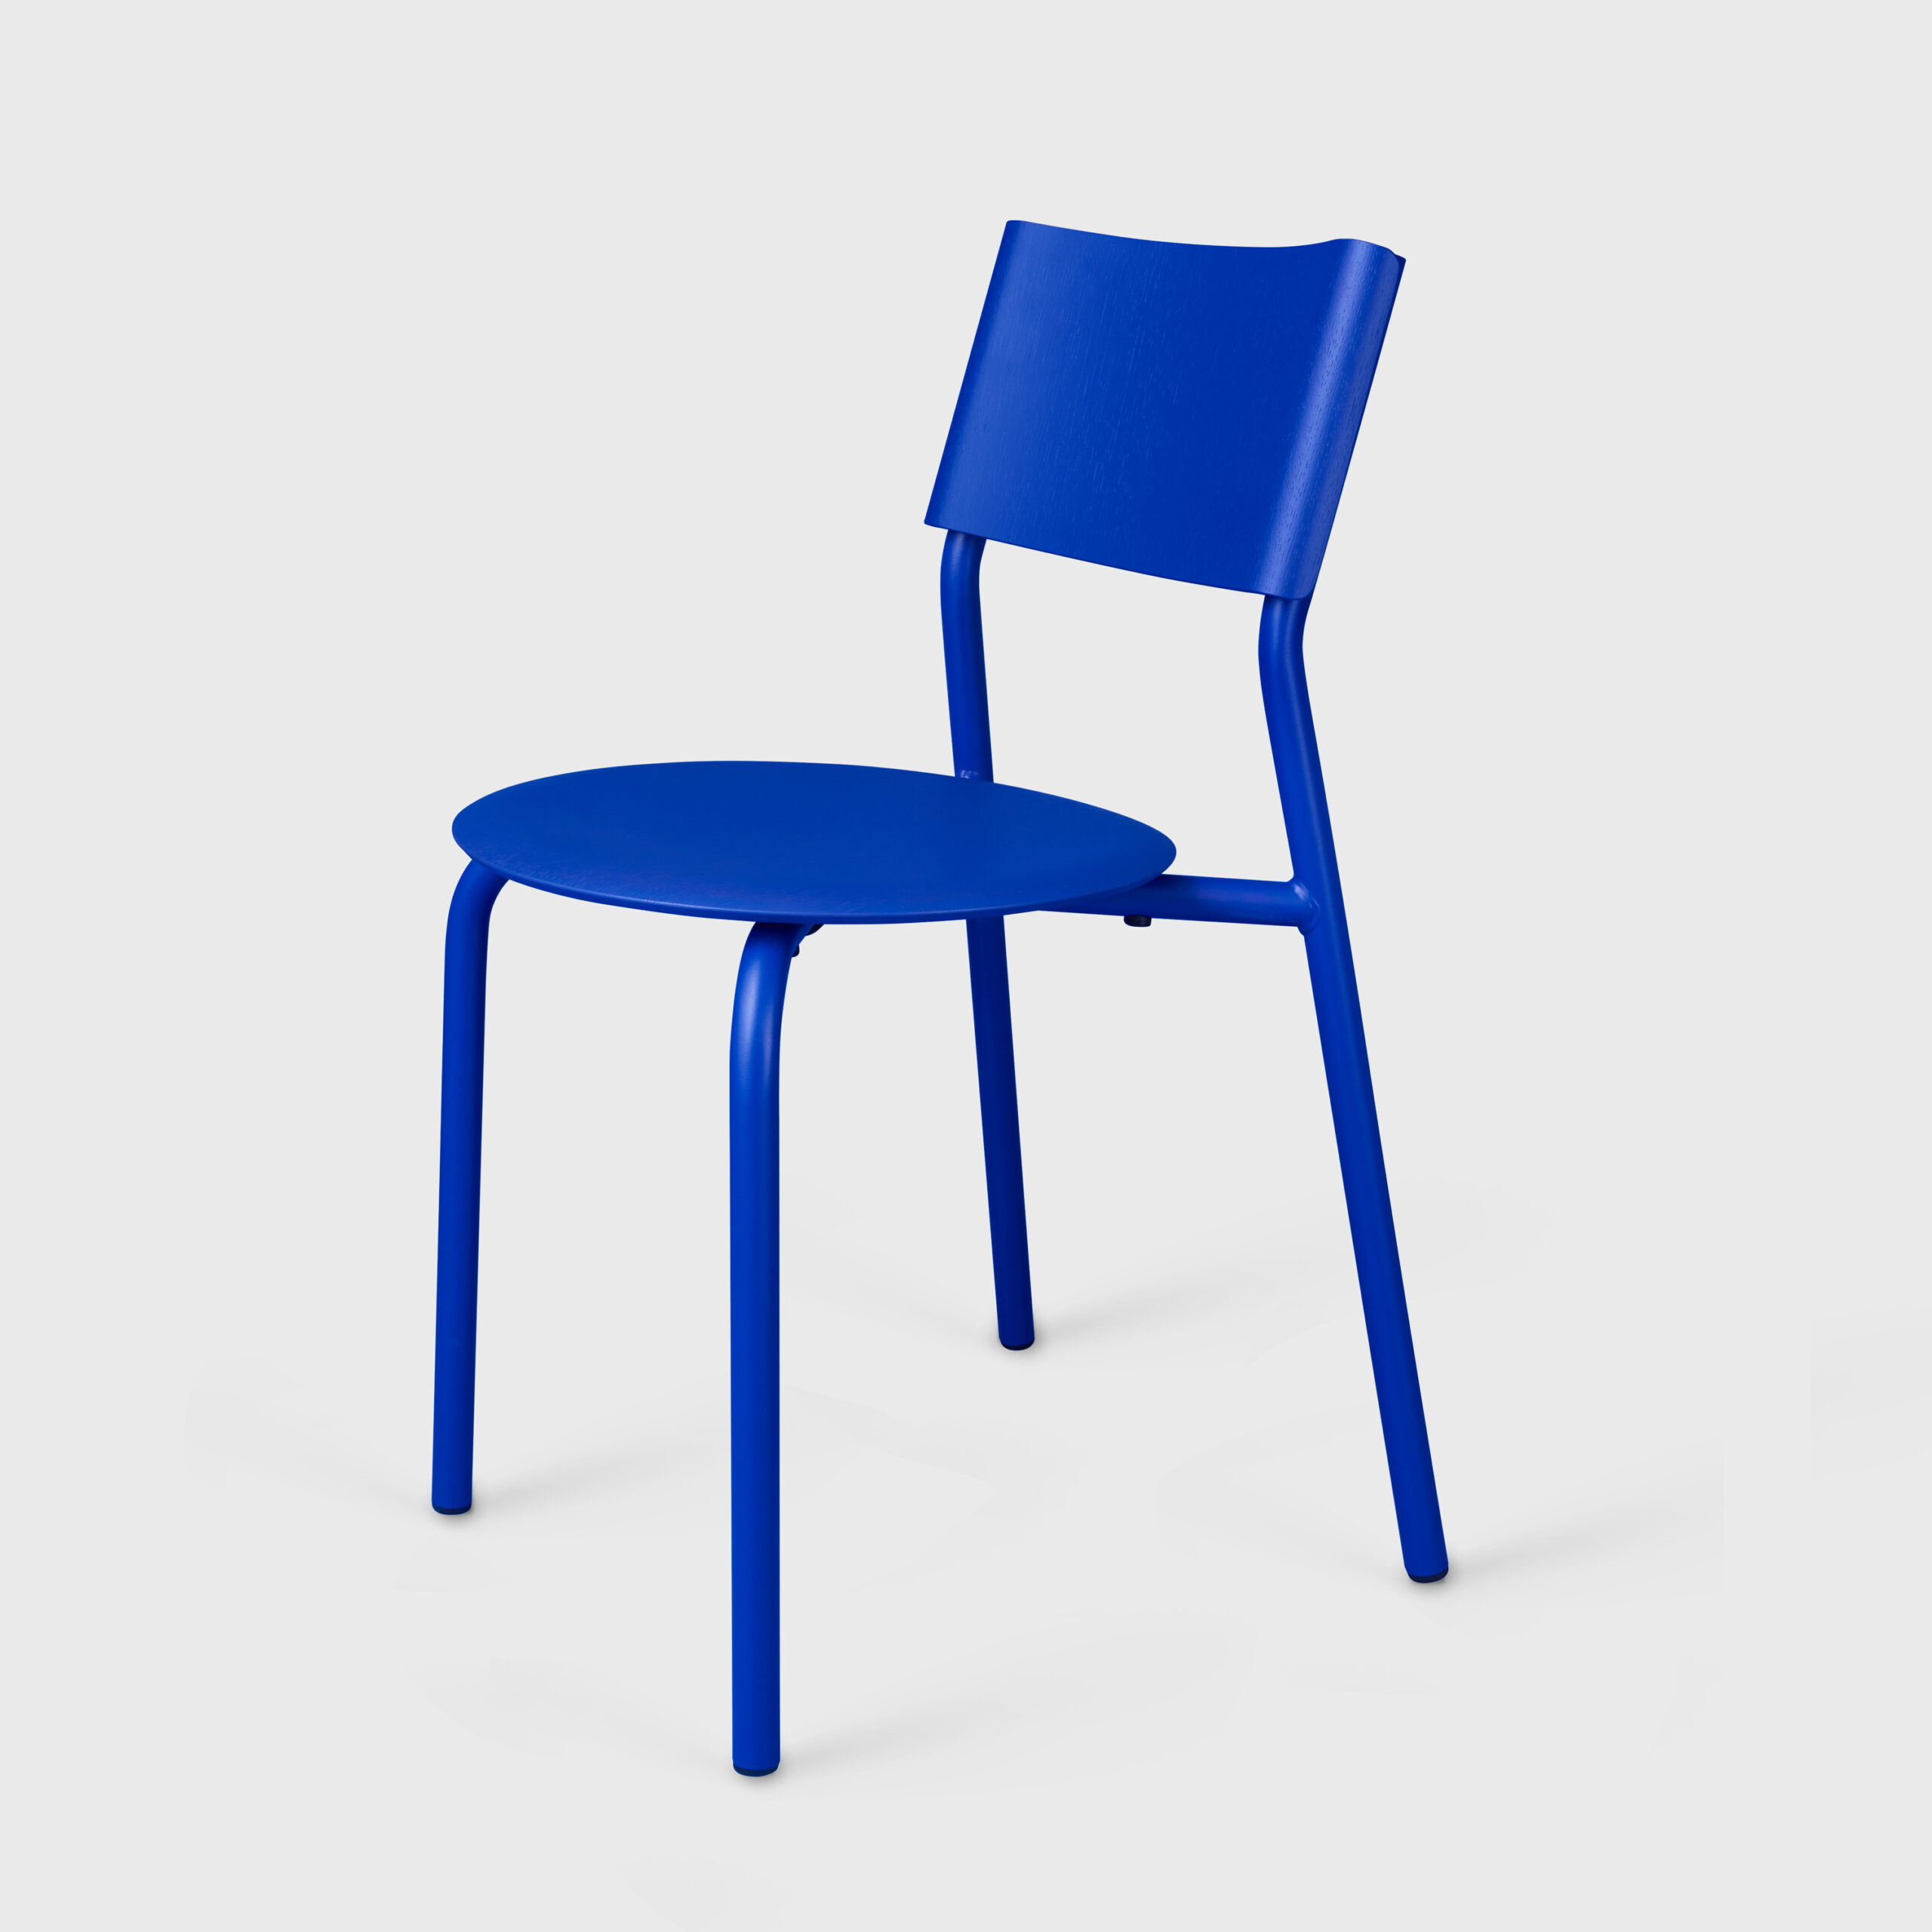 TIPTOE x KLEIN BLUE® – SSD Chair